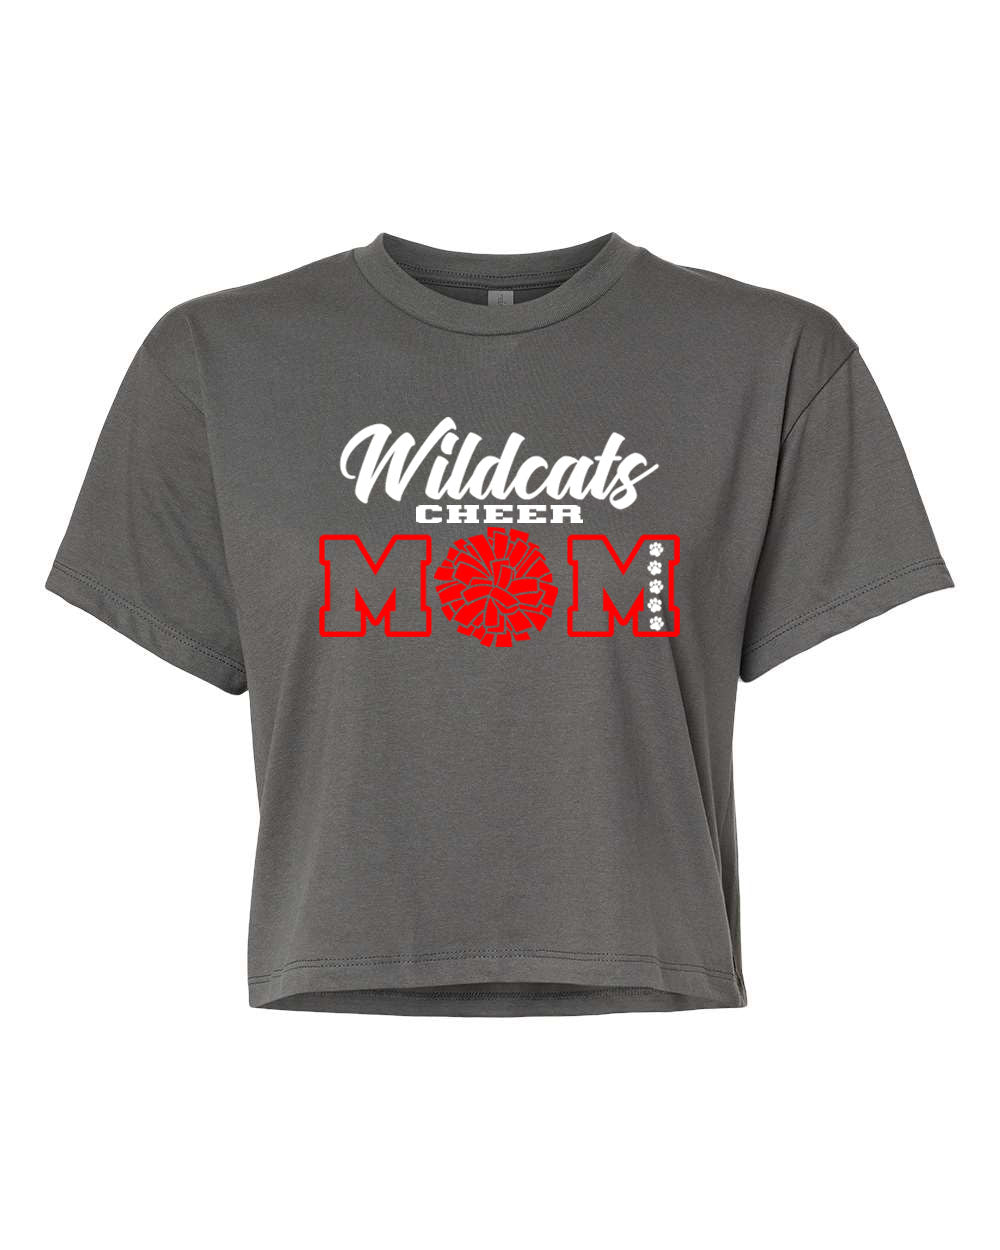 Wildcats Cheer design 7 Crop Top